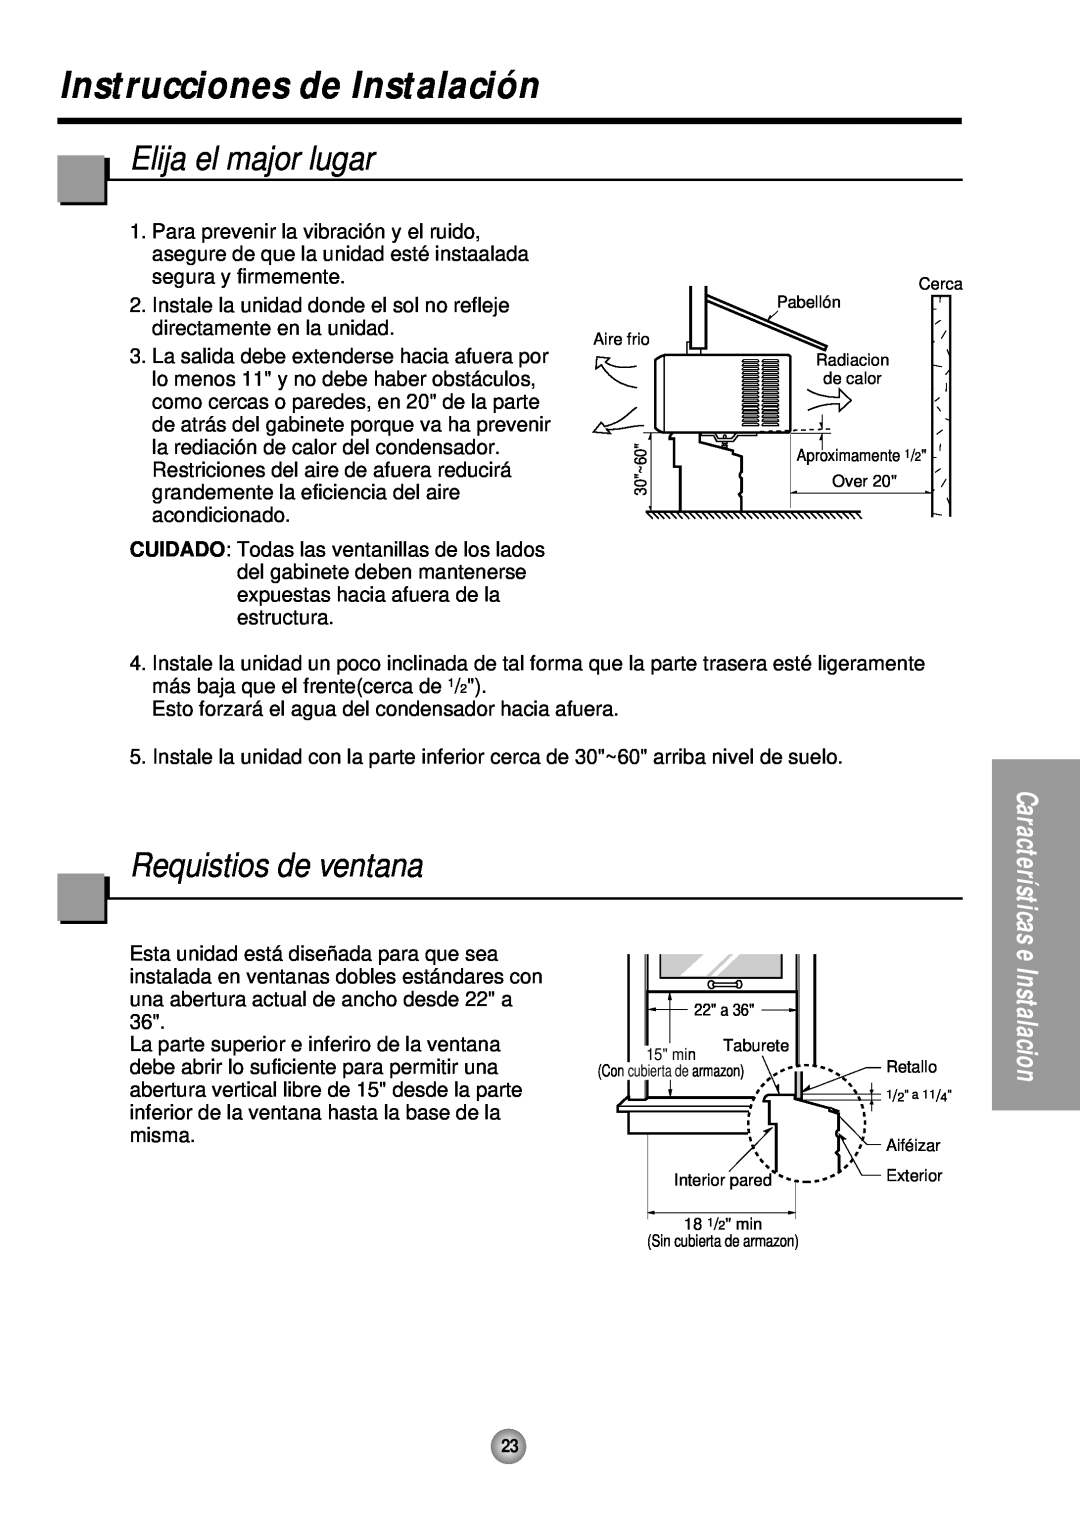 Quasar HQ-2081TH manual Instrucciones de Instalación, Elija el major lugar, Requistios de ventana 